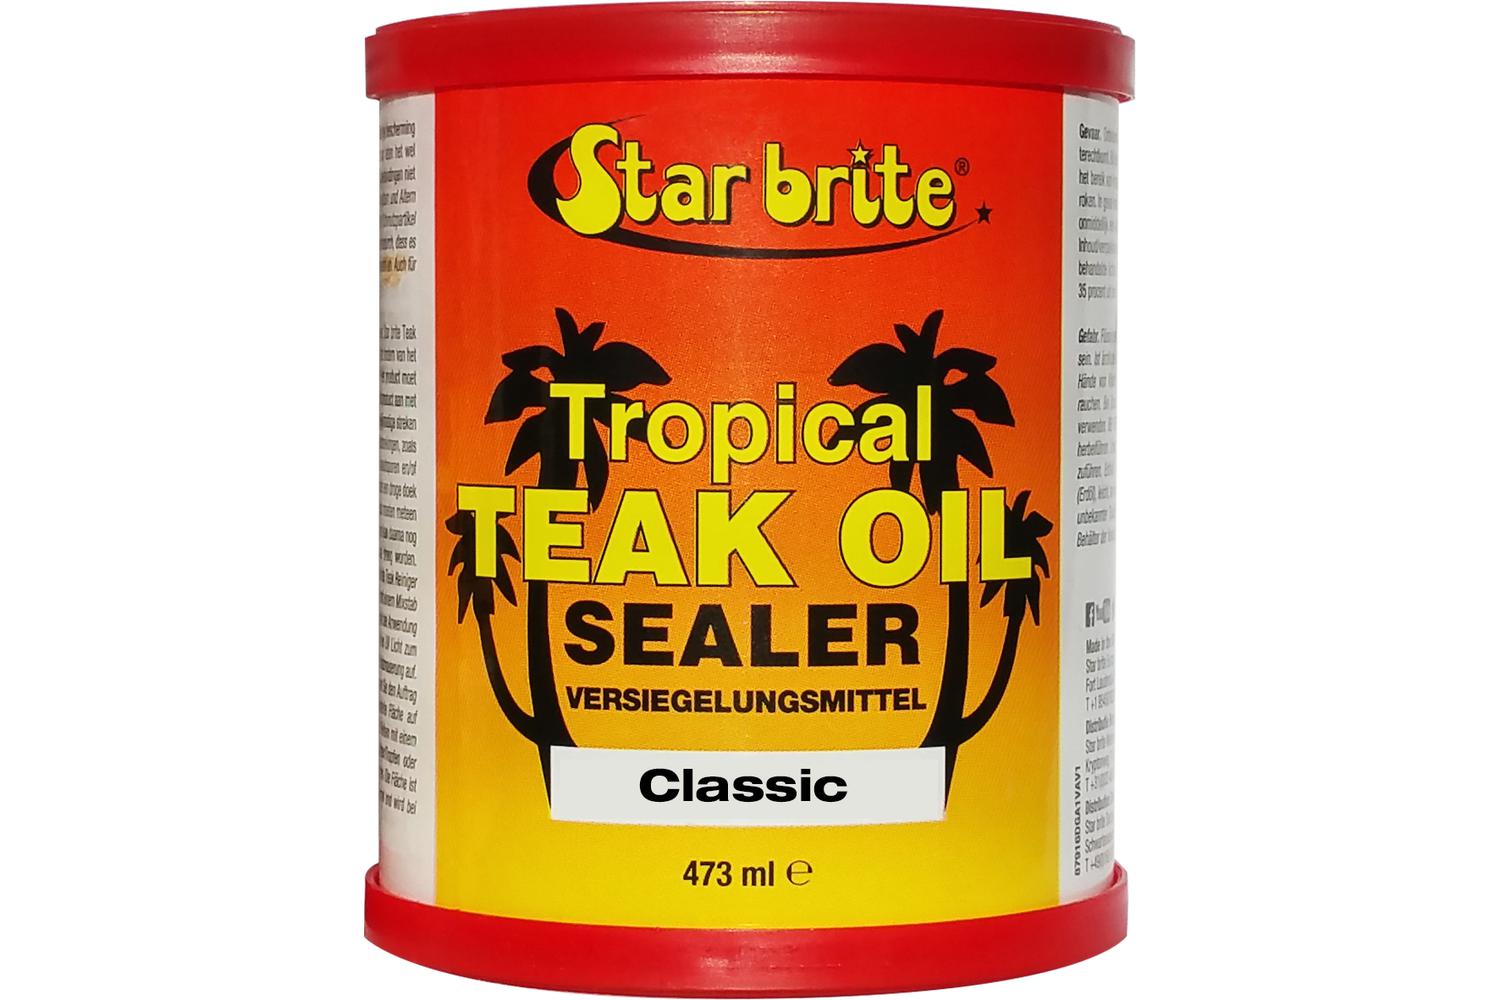 Starbrite Tropical Teak Oil Sealer - Classic 473 ml